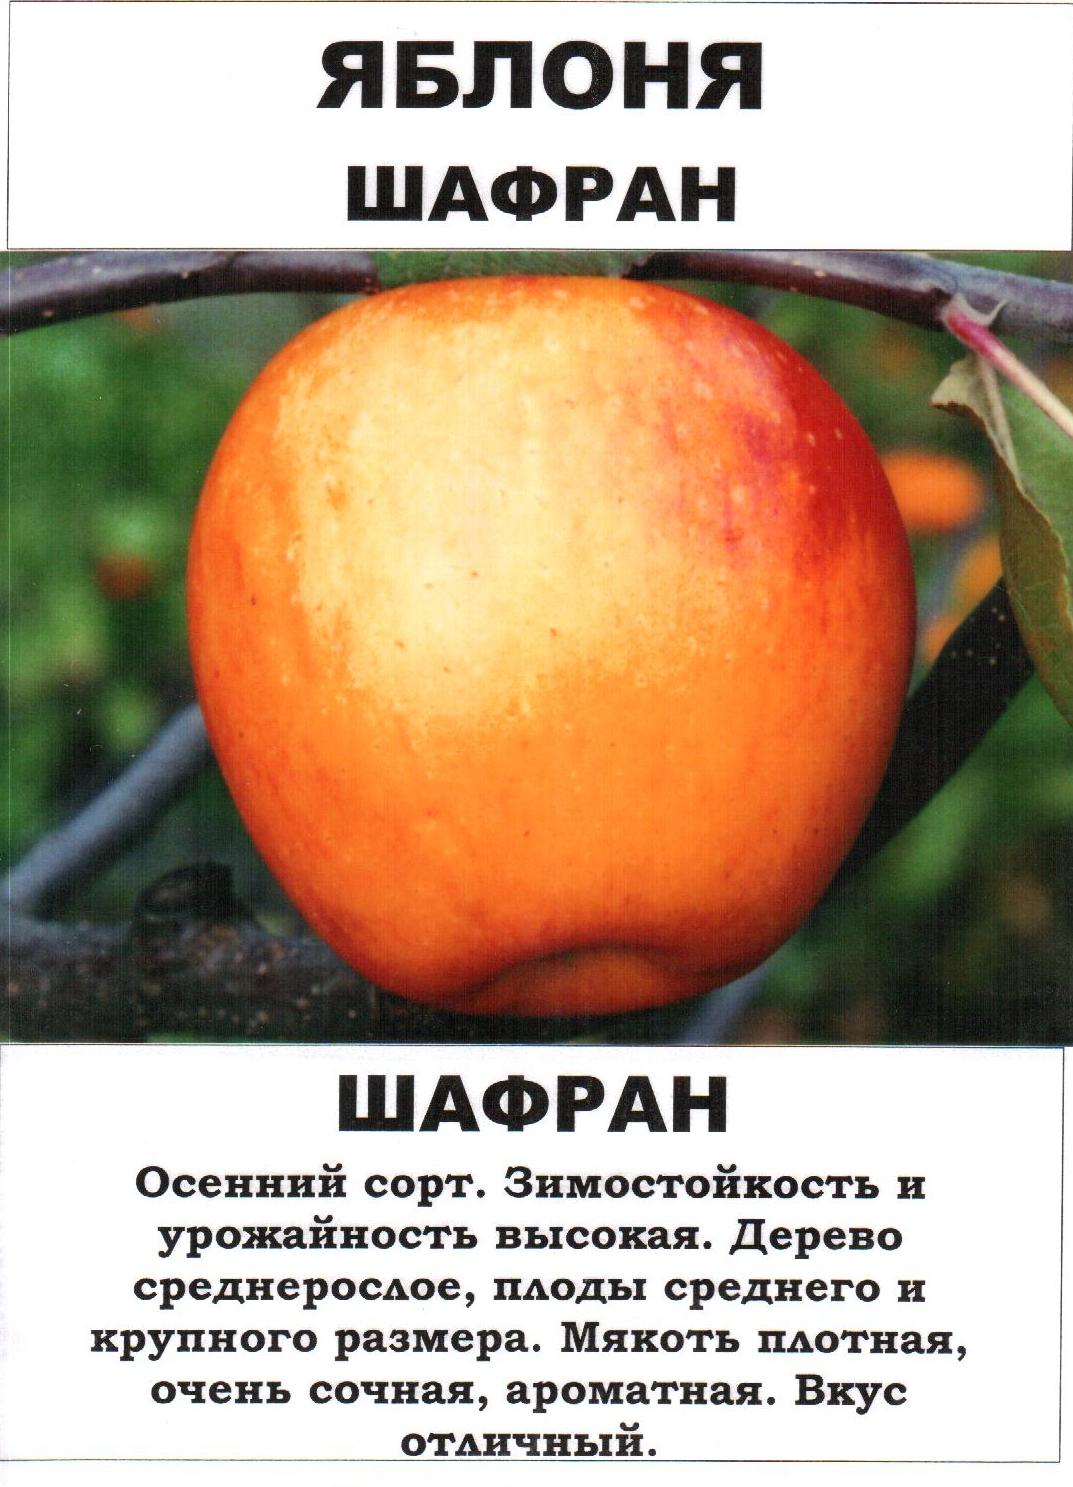 Яблоки пепин шафранный описание фото